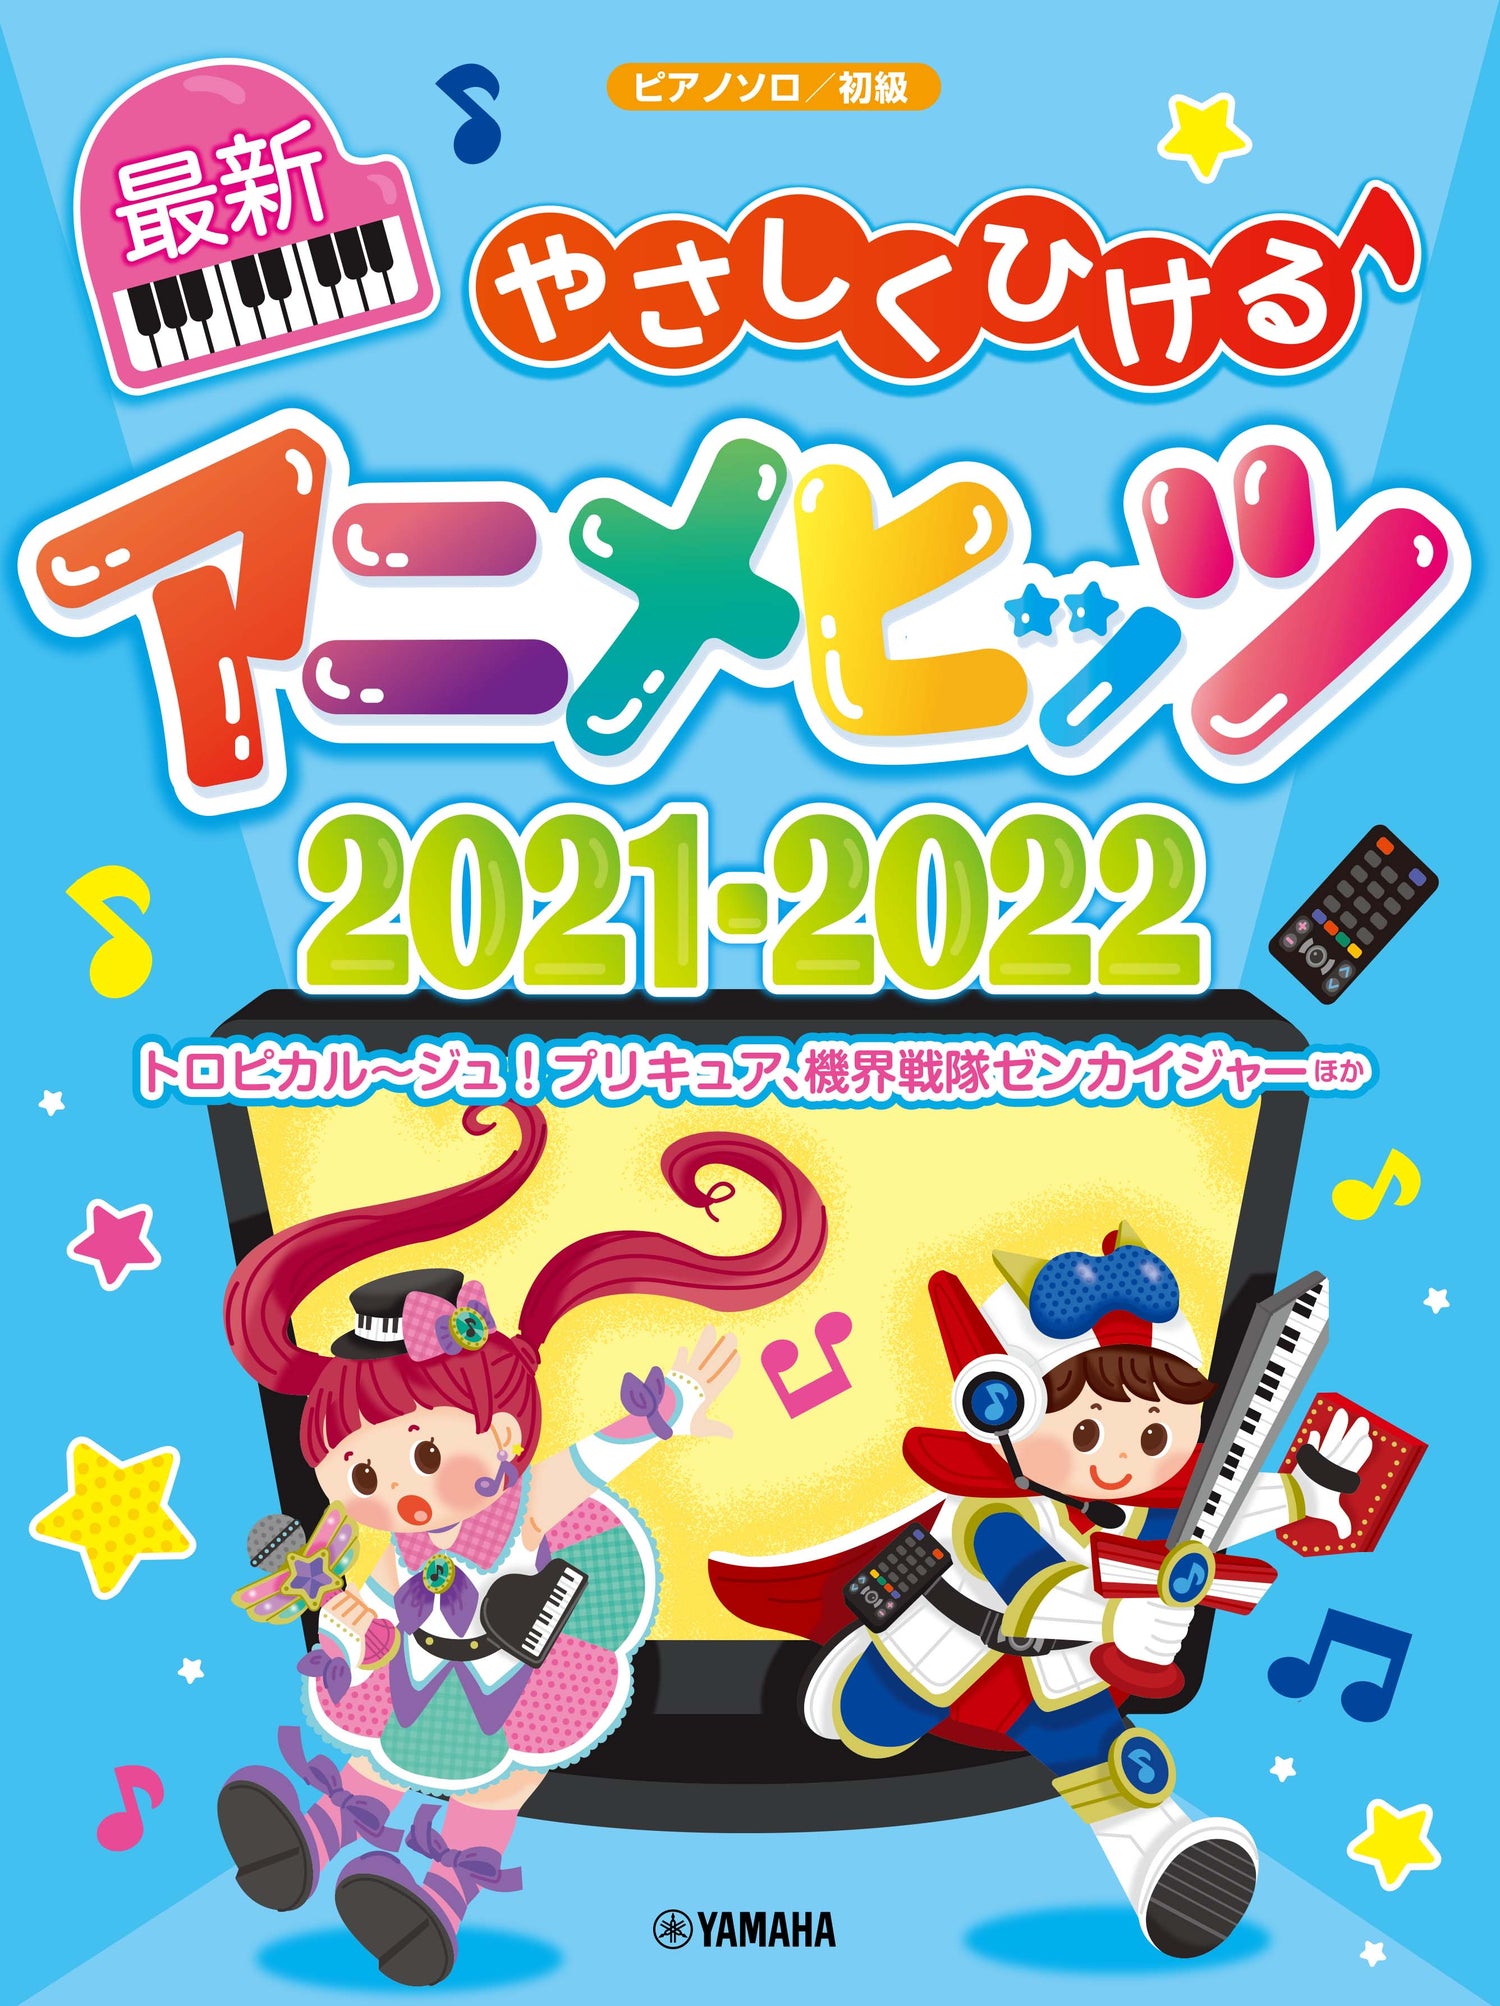 ピアノソロ やさしくひける最新アニメヒッツ2021-2022